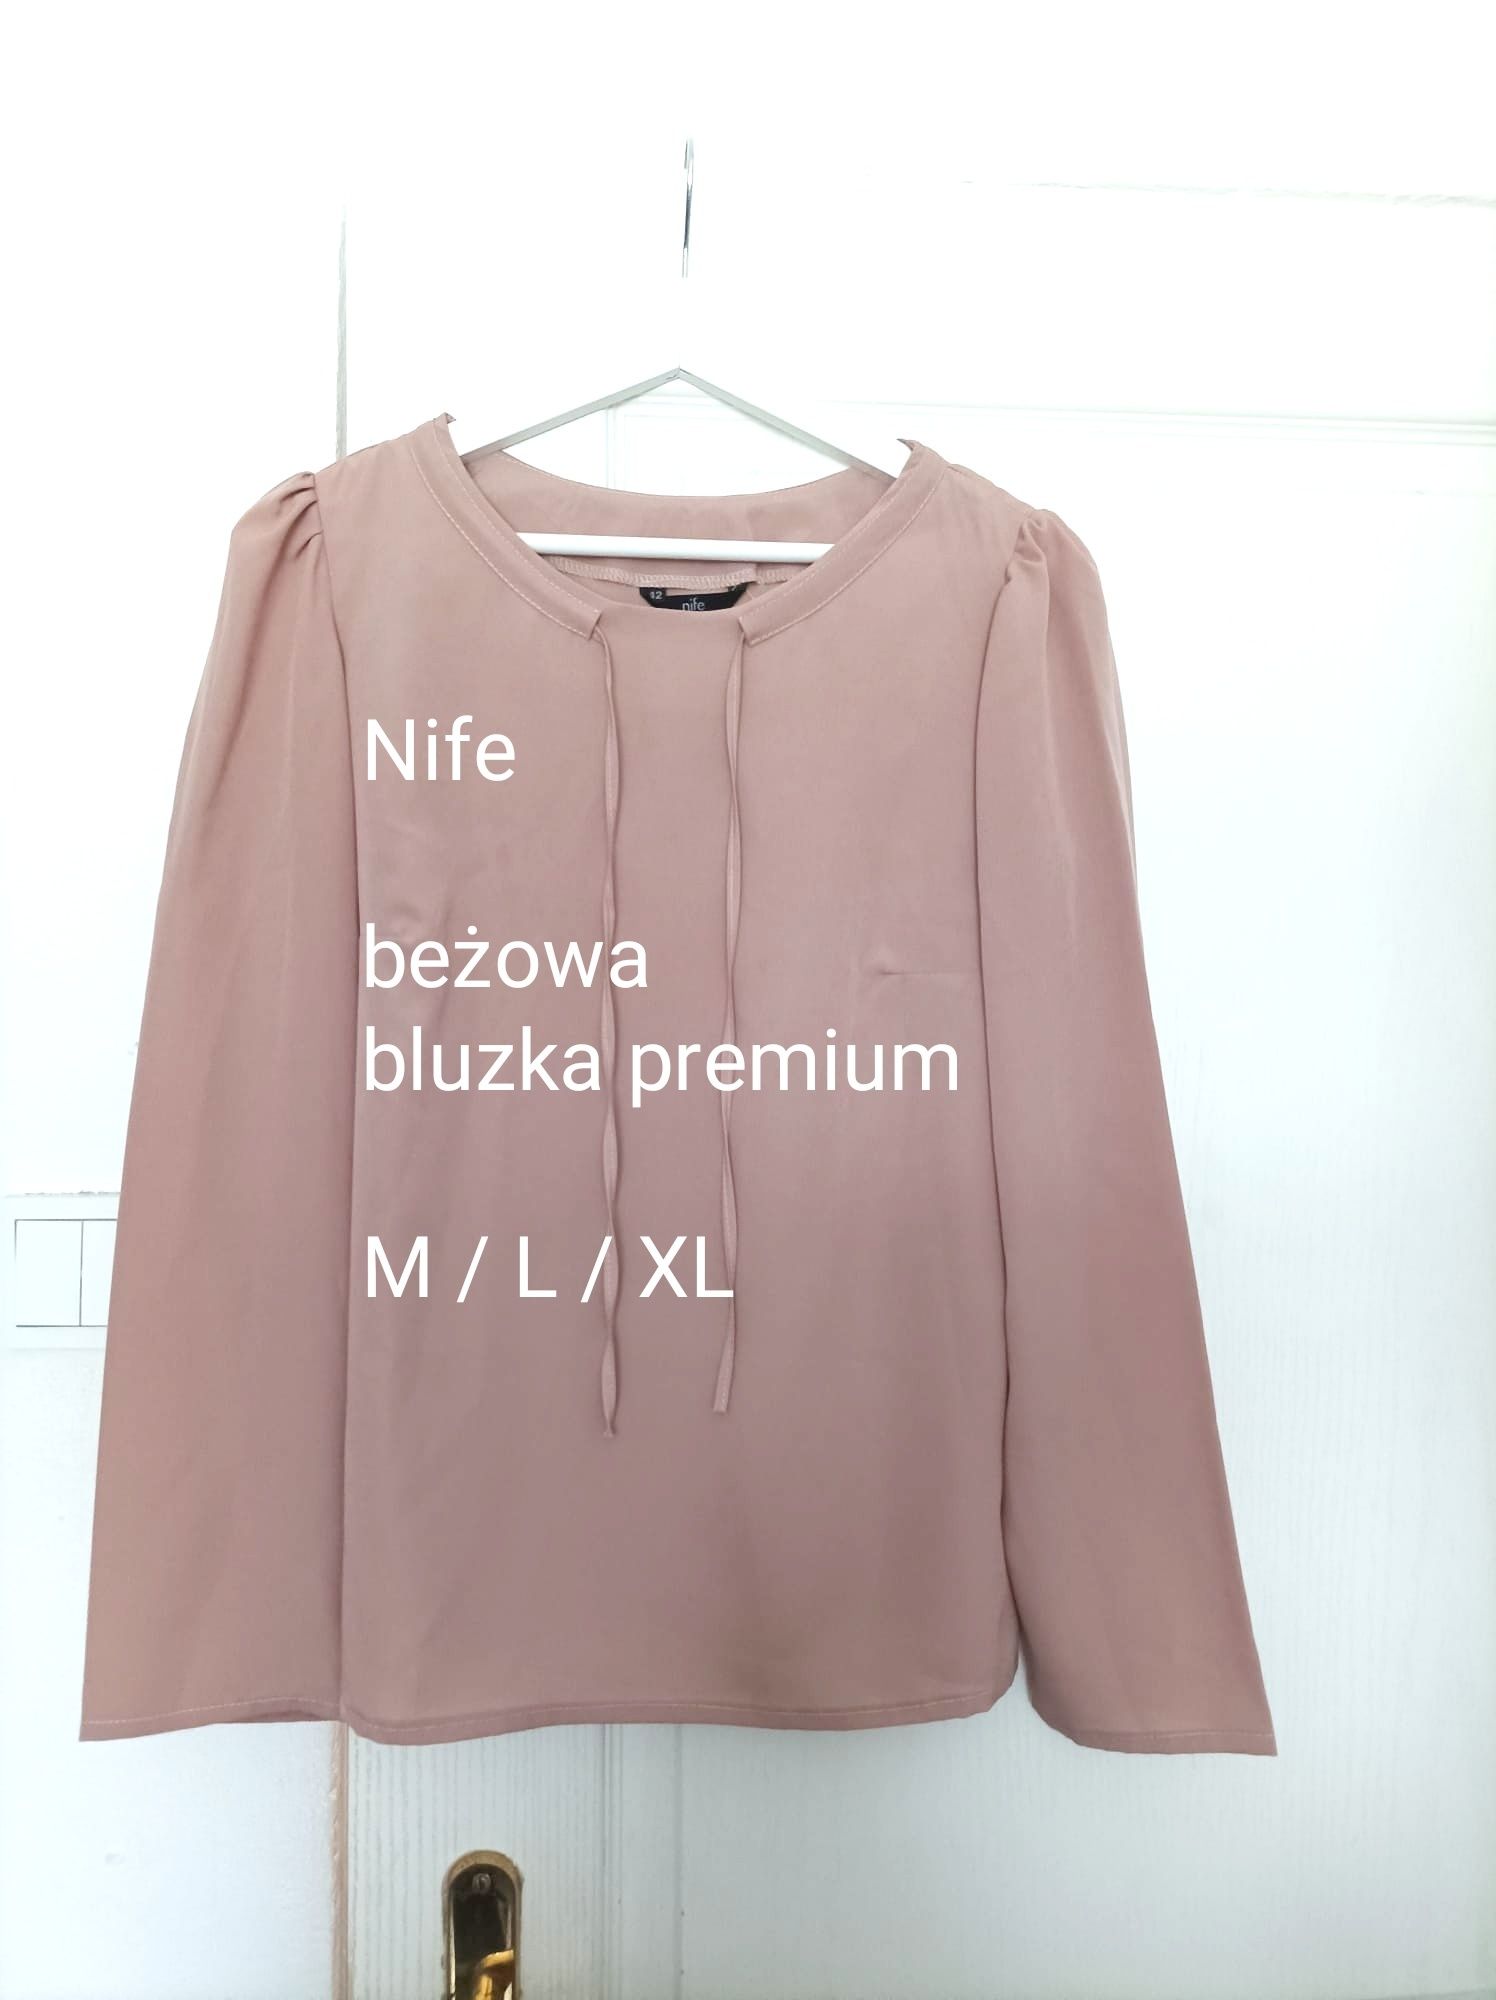 Bluzka szerokie rękawy Nife M L XL beżowa elegancka 38 40 42 modna